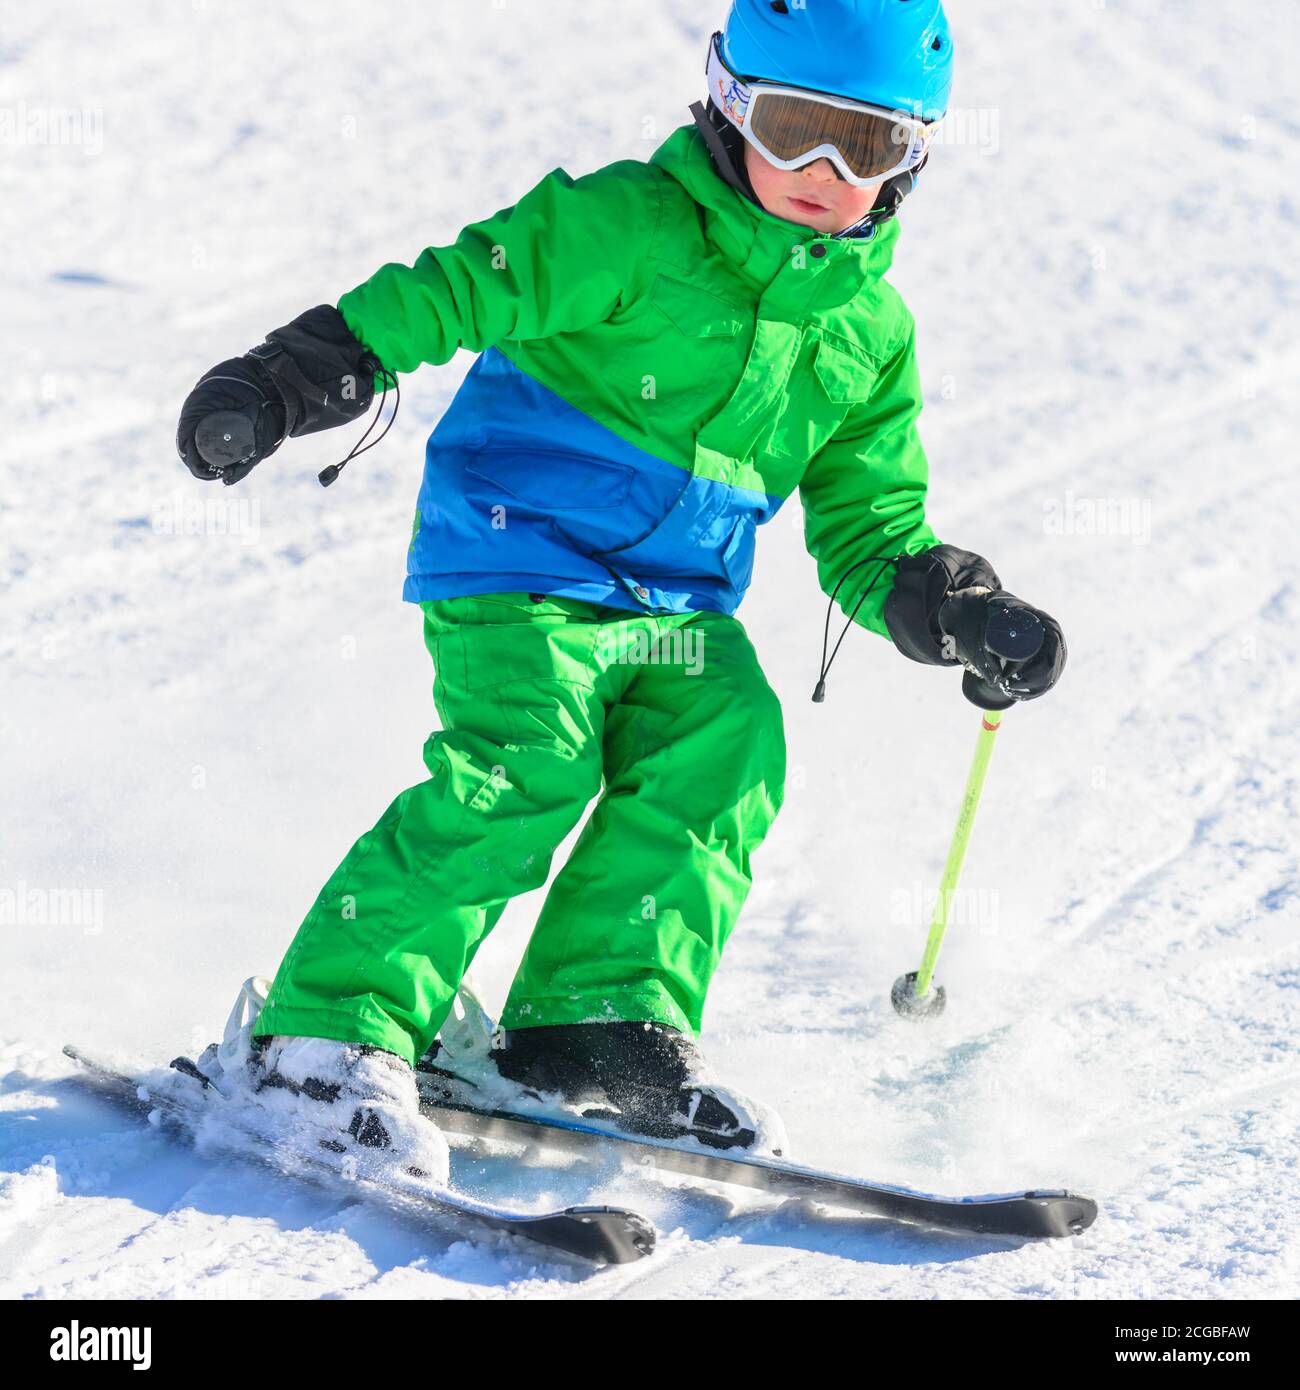 Les petits skieurs apprennent à skier sur une pente bien préparée et s'amusent beaucoup. Banque D'Images